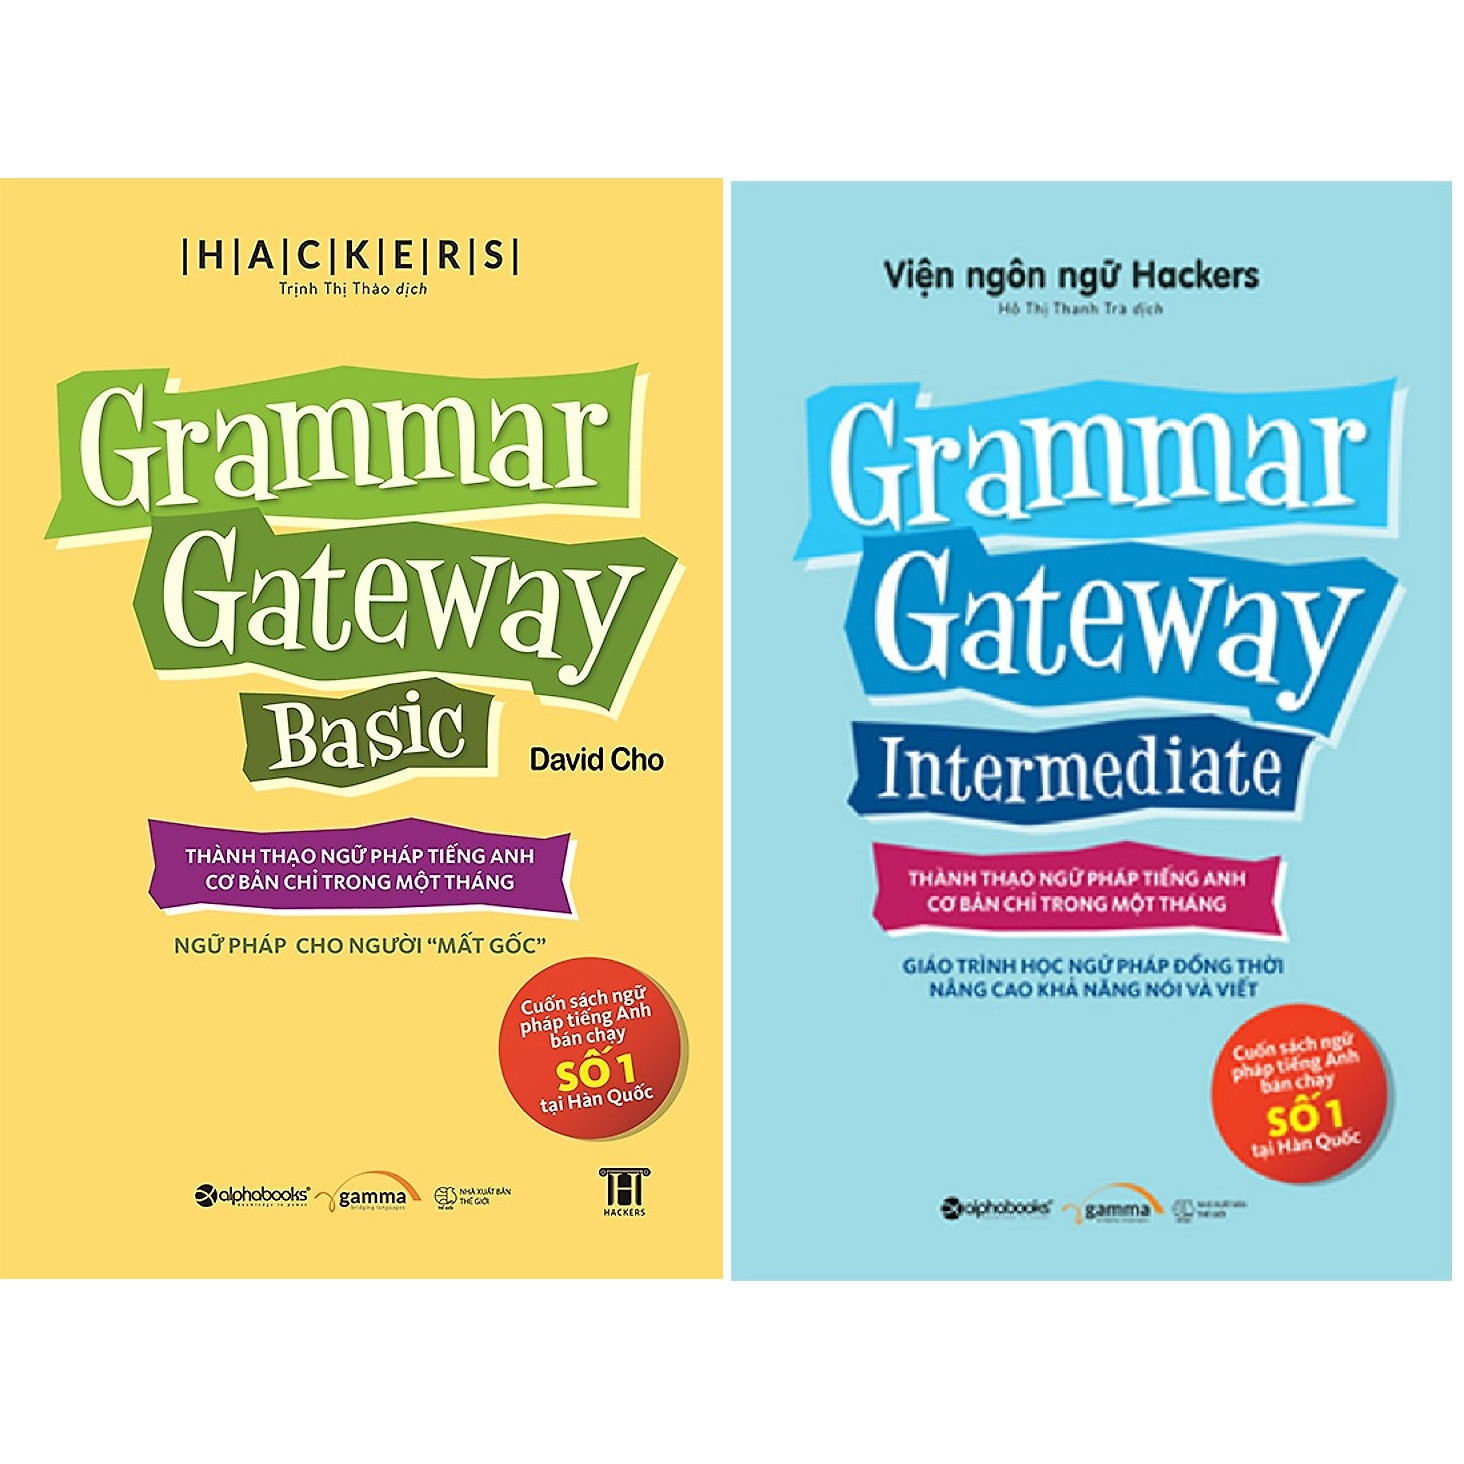 Bộ Sách Ngữ Pháp Tiếng Anh Bán Chạy Số 1 Tại Hàn Quốc ( Grammar Gateway Basic + Grammar Gateway Intermediate ) (Tặng Tickbook đặc biệt)